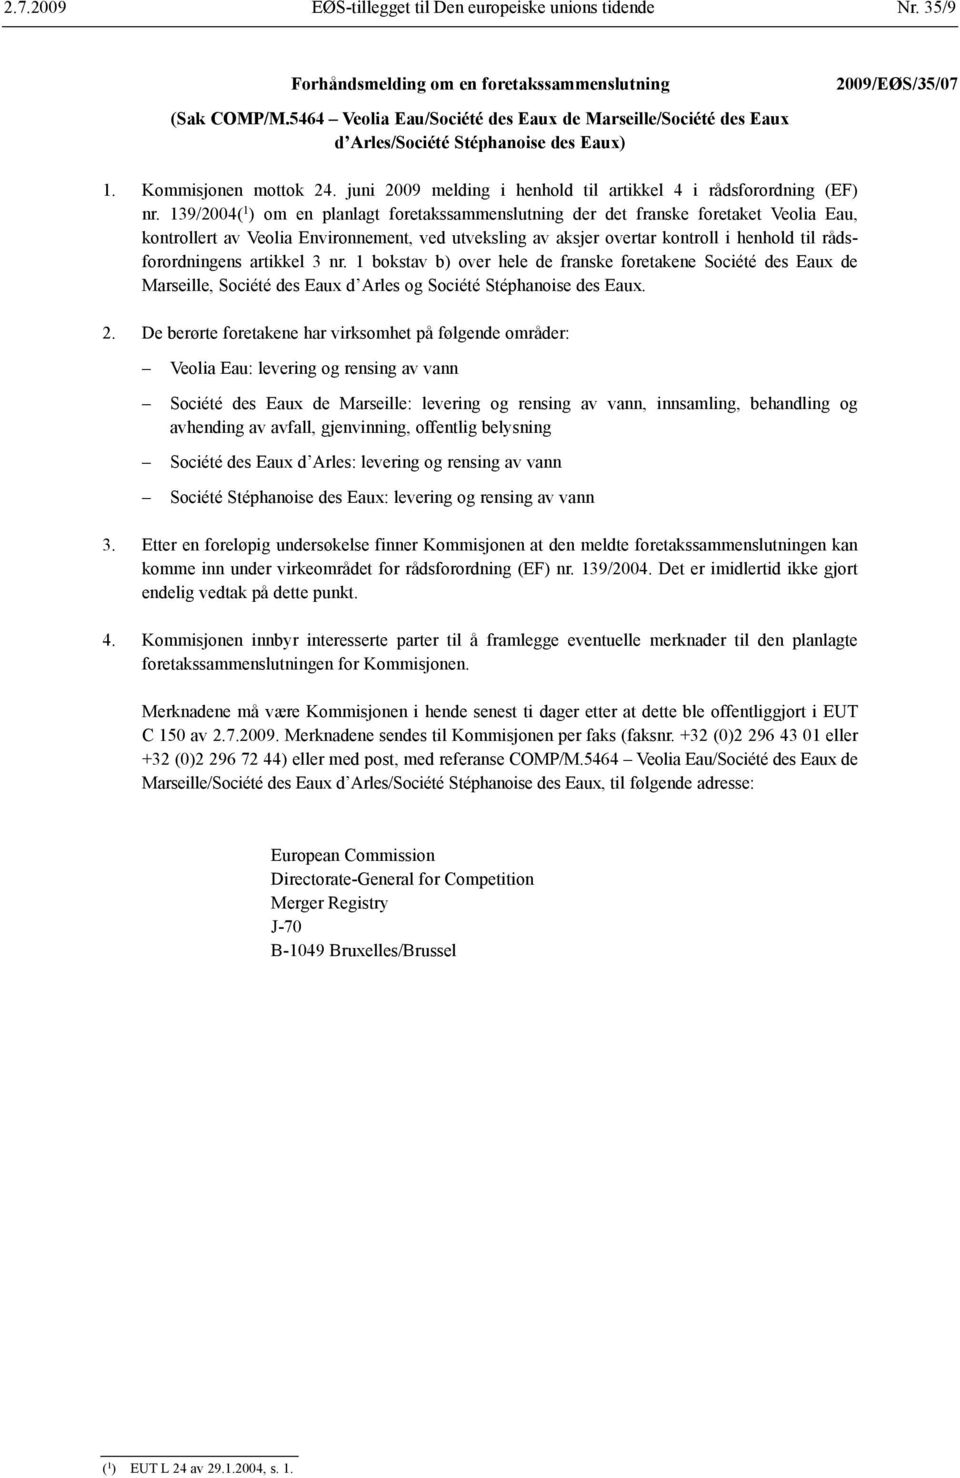 139/2004( 1 ) om en planlagt foretaks sammenslutning der det franske foretaket Veolia Eau, kontrollert av Veolia Environnement, ved utveksling av aksjer overtar kontroll i henhold til